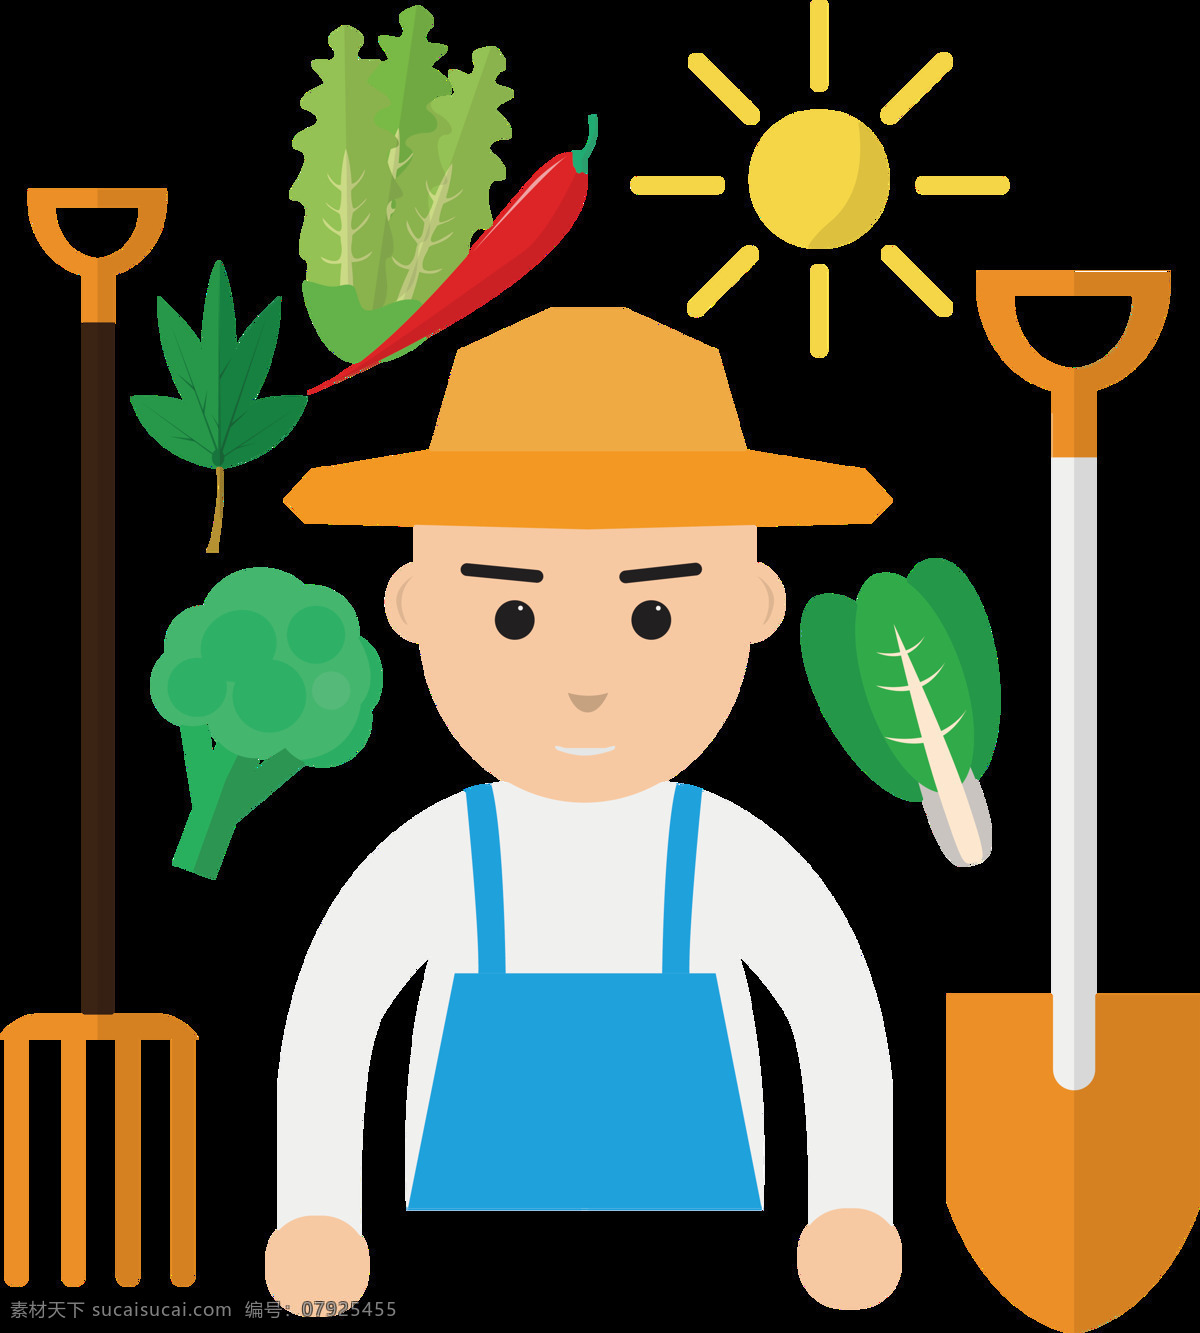 可爱 手绘 种植 蔬菜 劳动节 节日 元素 五一节 铲子 欢度佳节 种植蔬菜 黄色草帽 蓝色背带裤